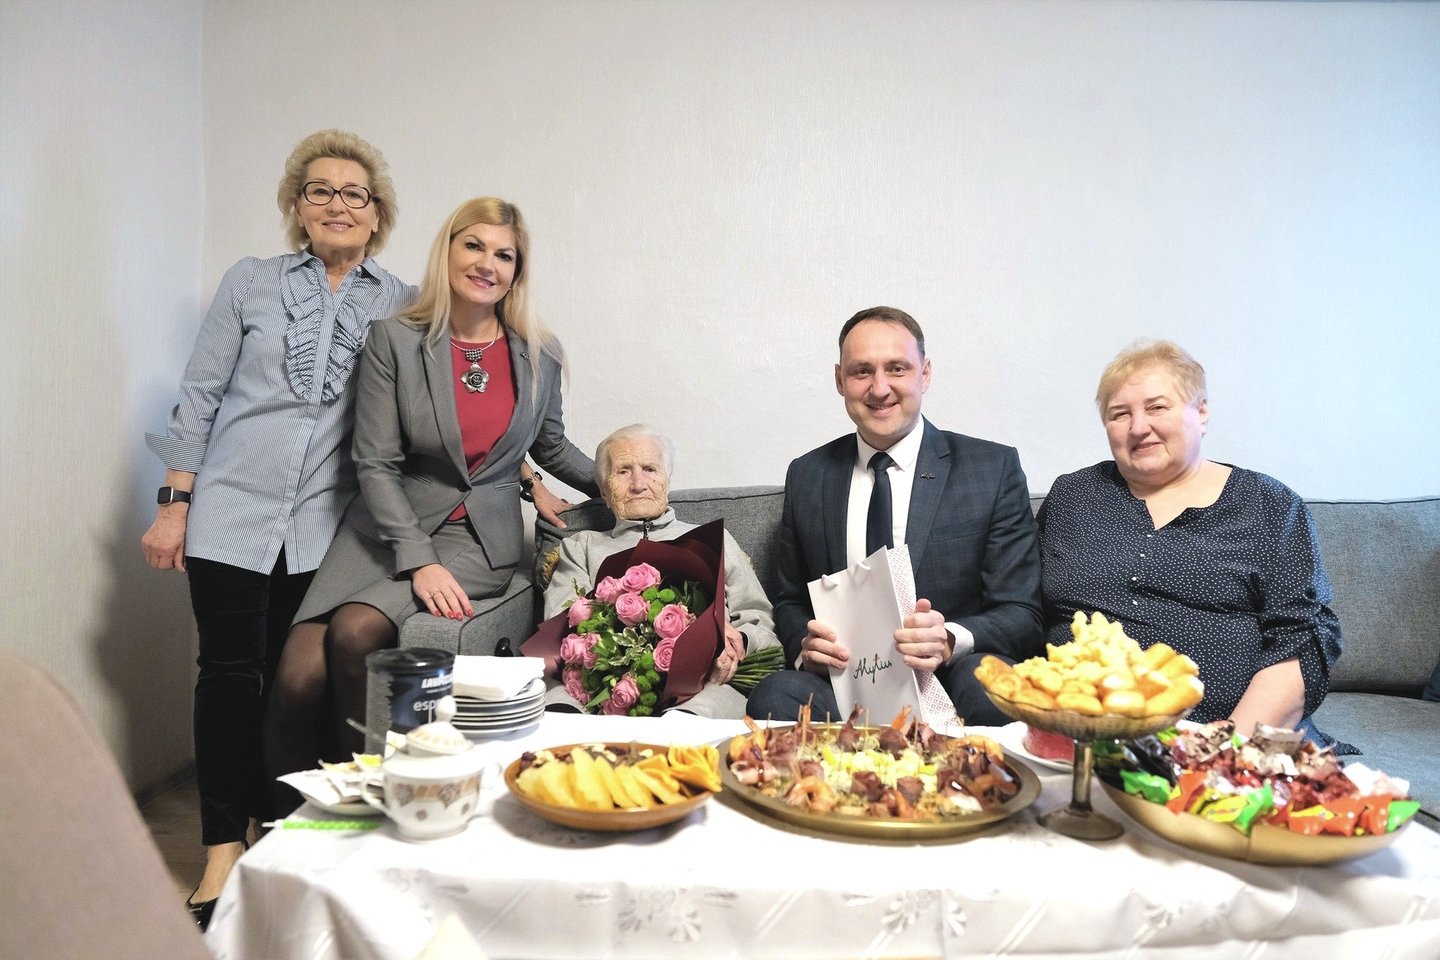 Šį savaitgalį viename miesto restorane Ona Rutkauskienė su būriu artimųjų švęs 100 metų jubiliejų. Energinga moteris nesiskundžia nei sveikata, nei apetitu.